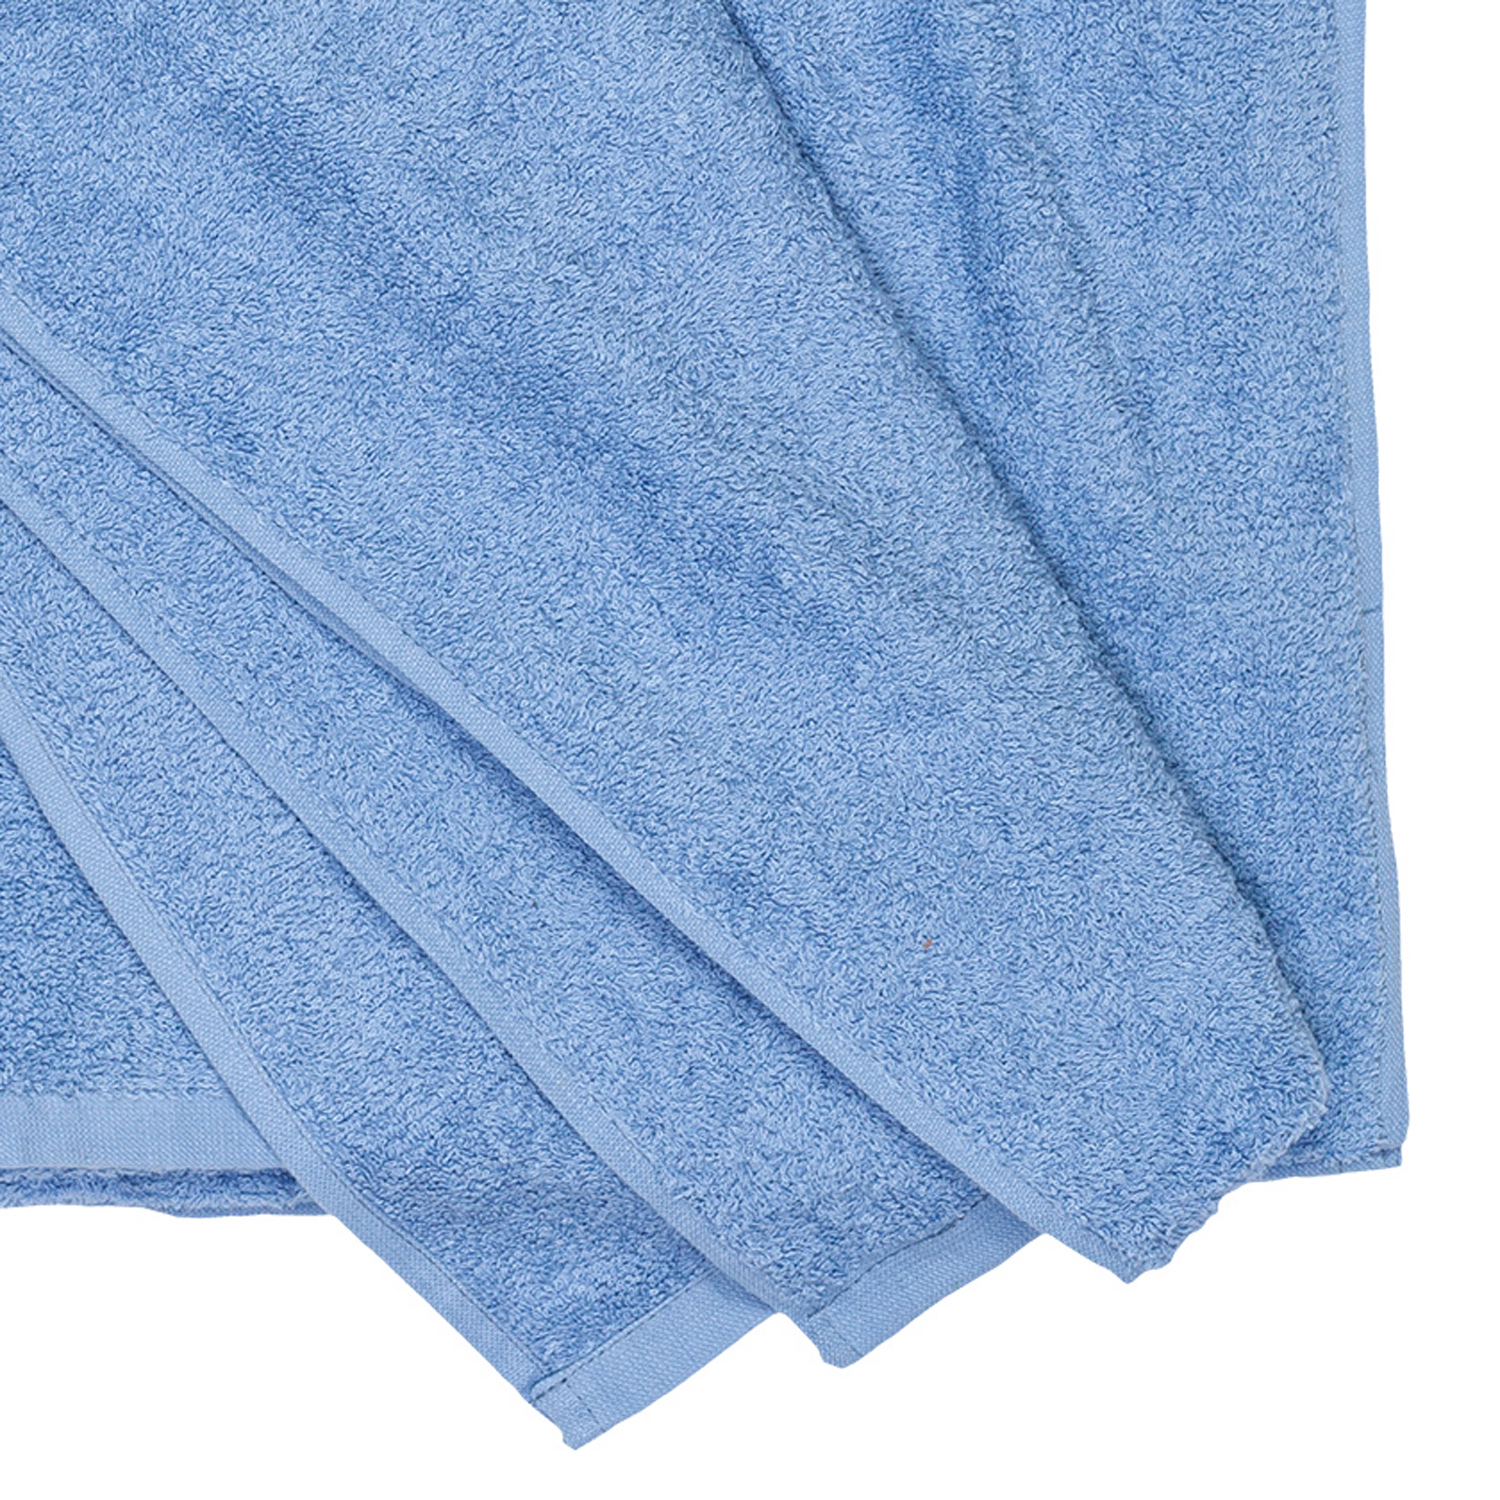 Bath towel series Helsinki in light blue by Adamo in large sizes 100x220 cm or 155x220 cm